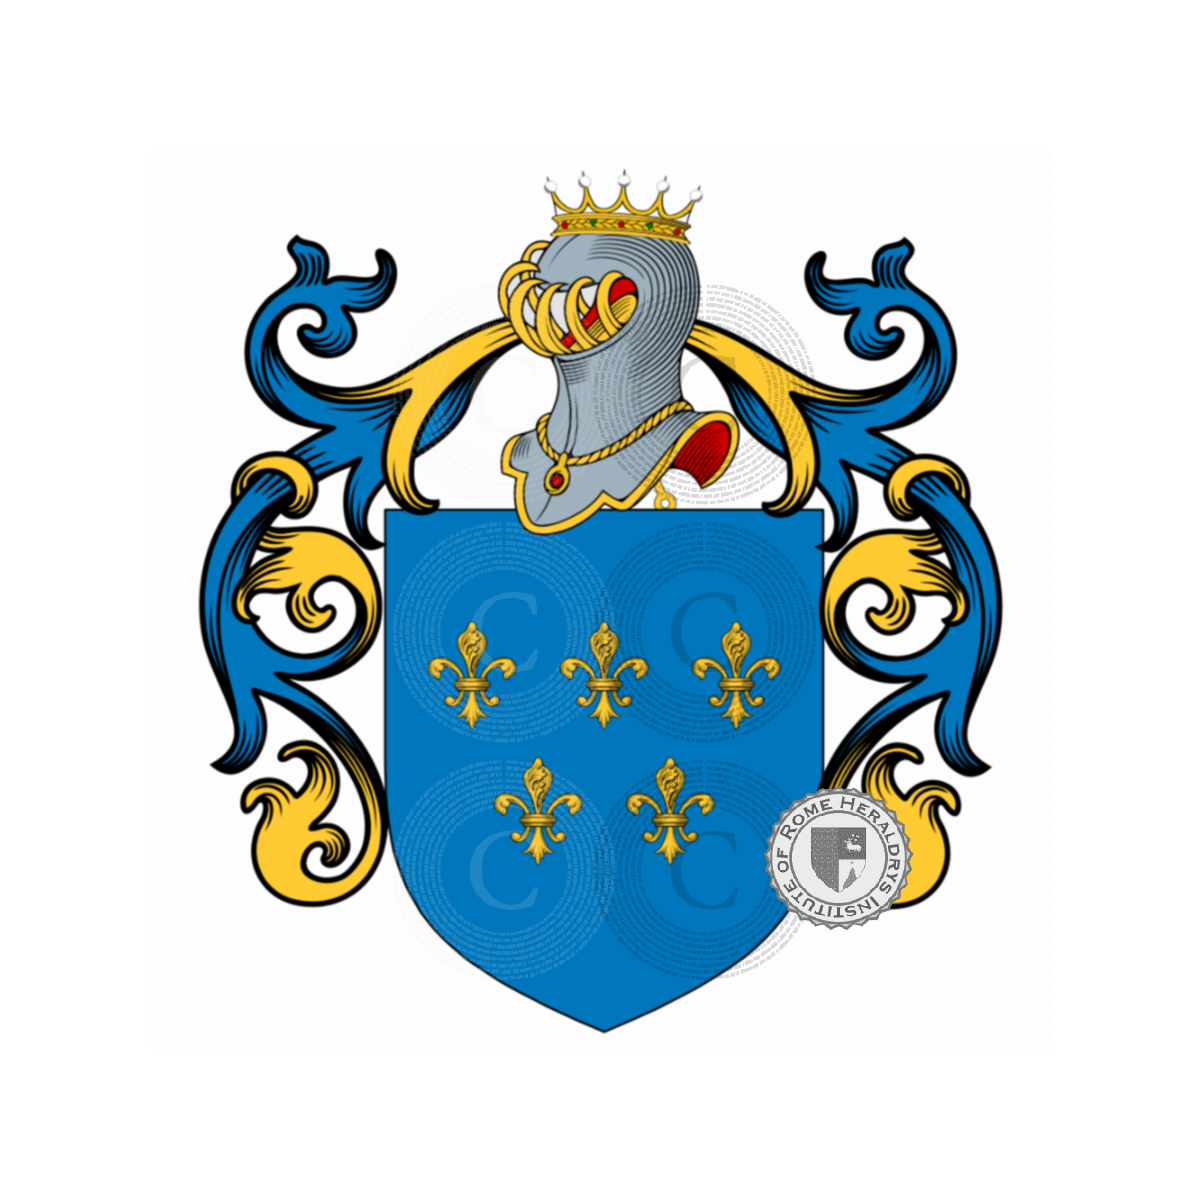 Wappen der FamiliePrato, da Prato,de Prato